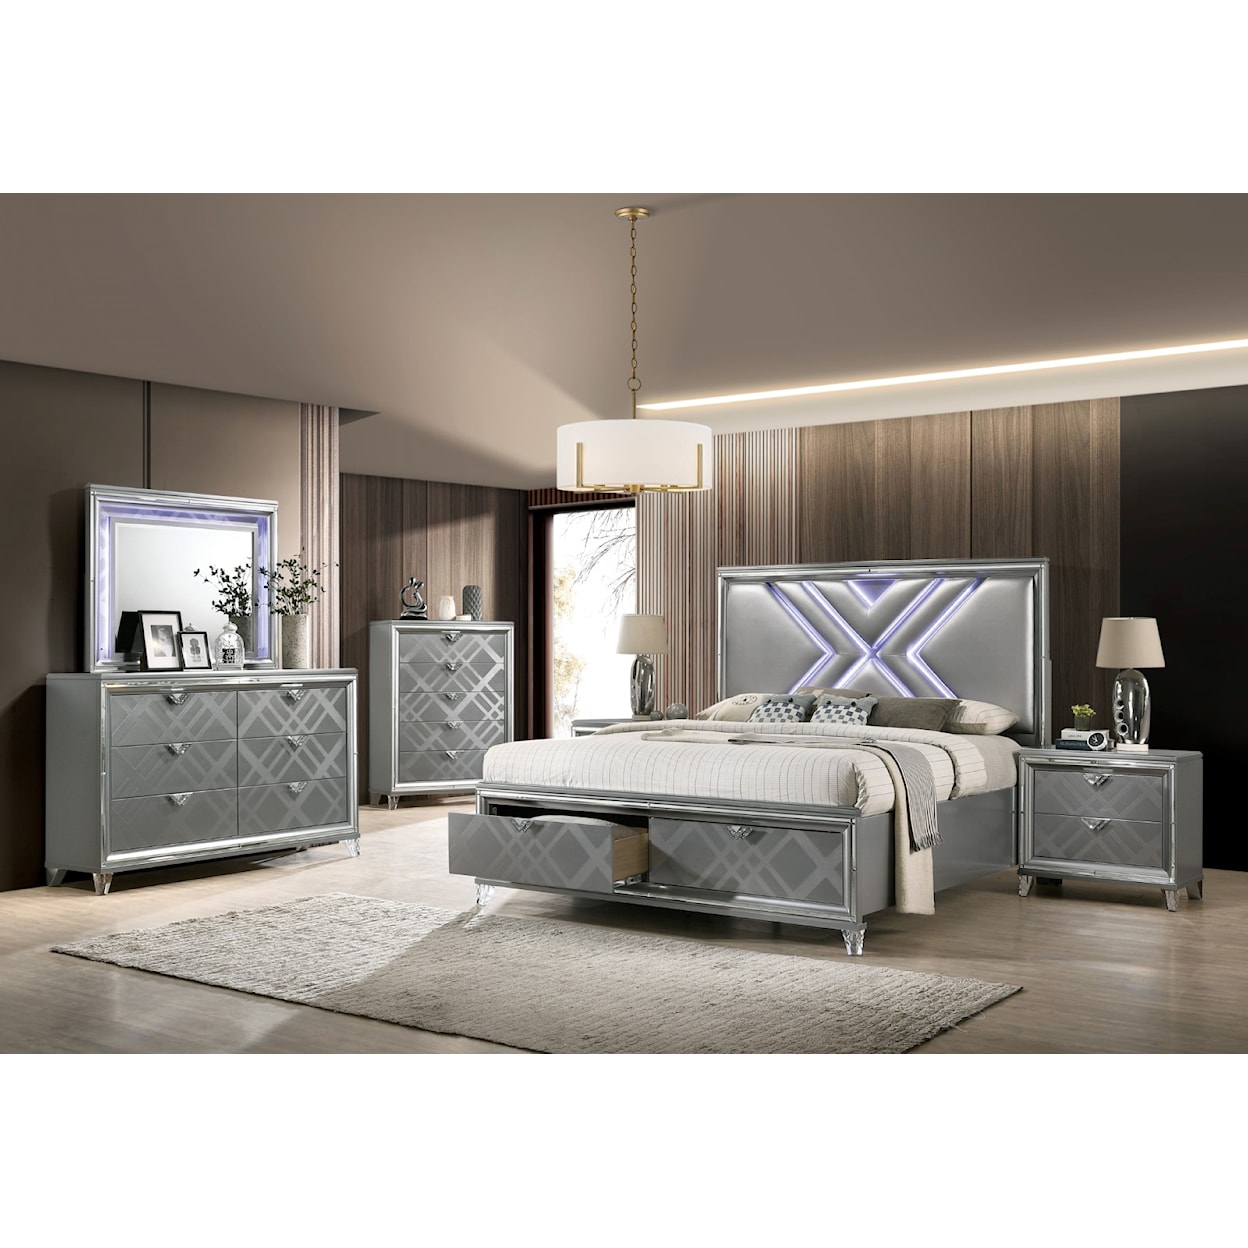 Furniture of America Emmeline Queen Bedroom Set